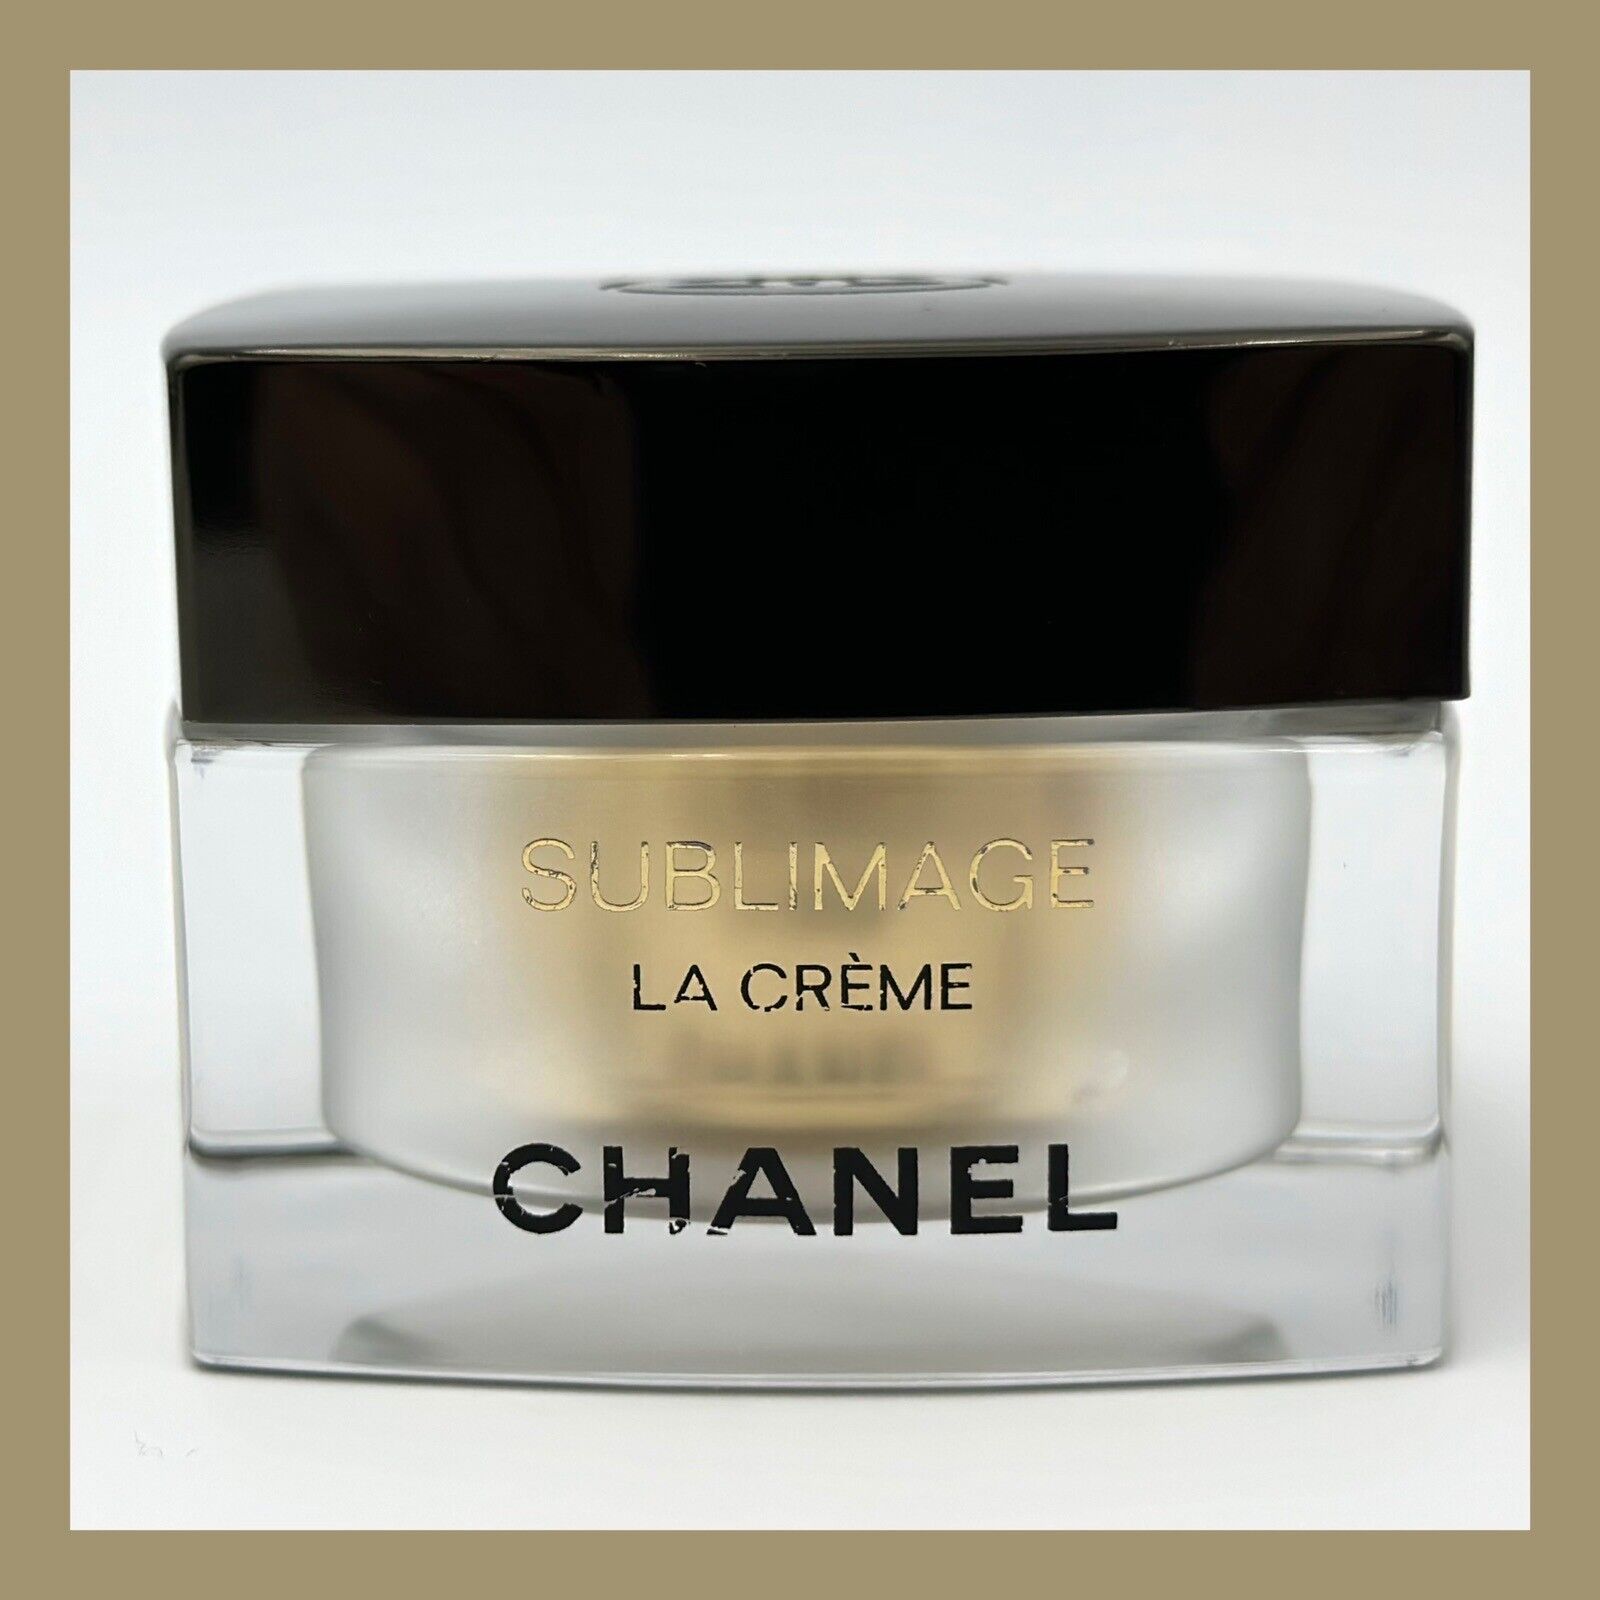 ❤️CHANEL Sublimage La Crème EMPTY Jar Bottle 1.7 oz❤️